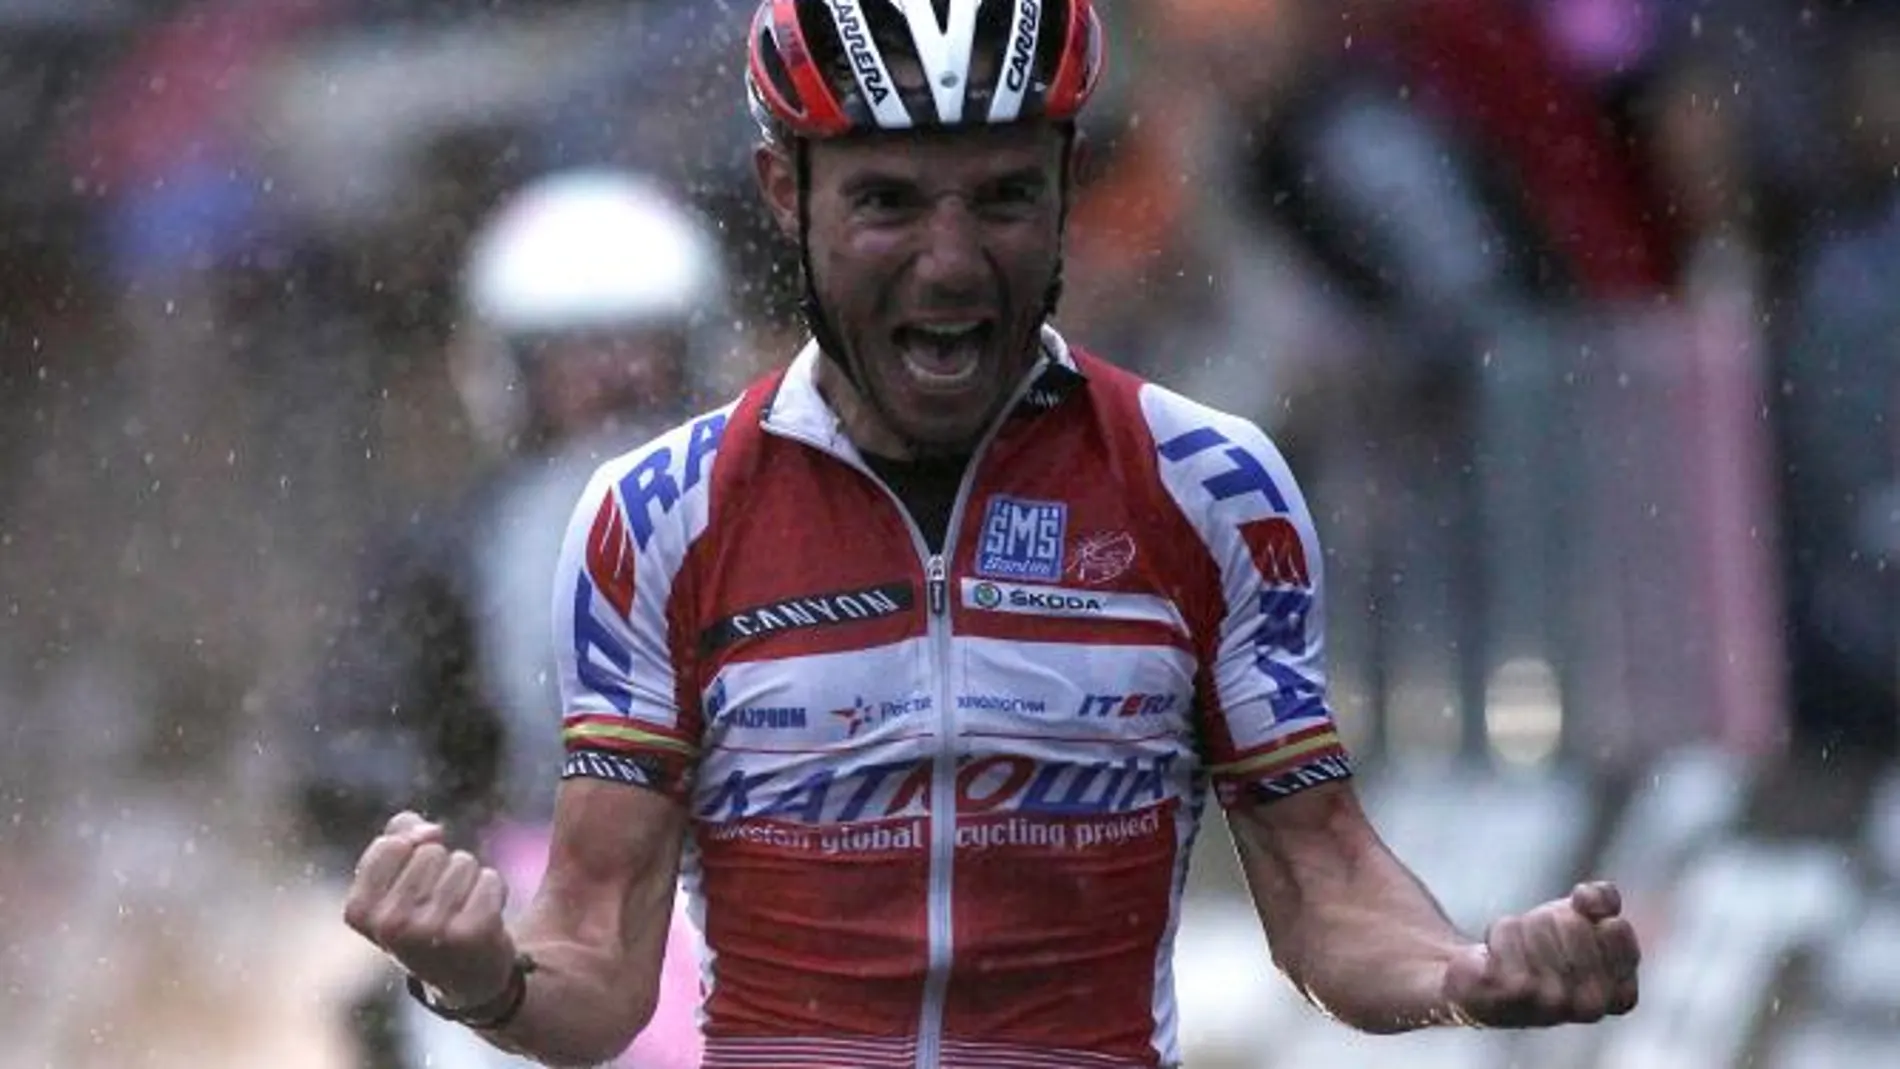 Purito Rodríguez, en su etapa como ciclista